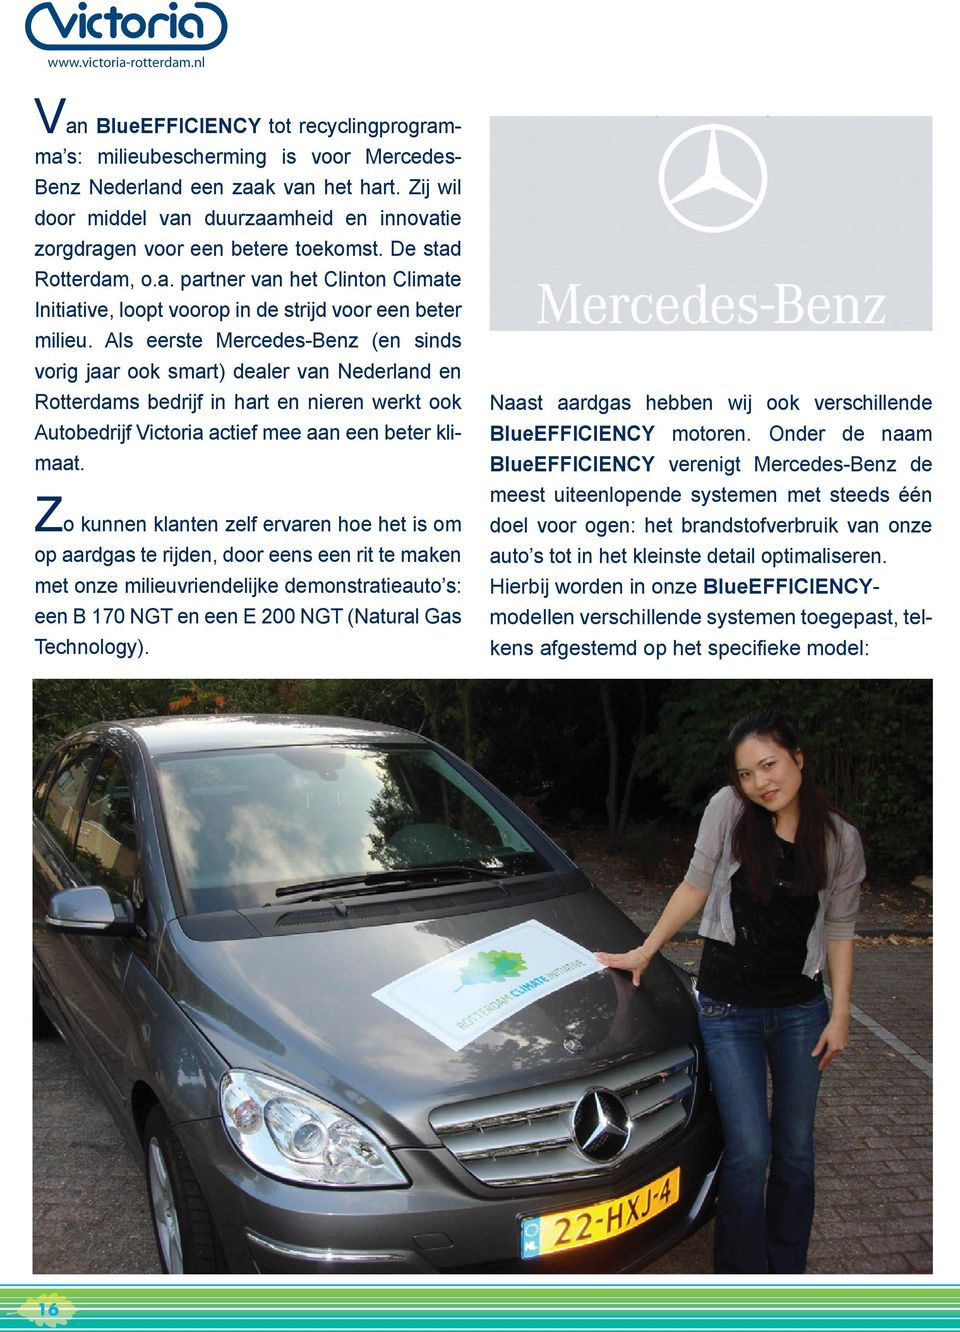 Als eerste Mercedes-Benz (en sinds vorig jaar ook smart) dealer van Nederland en Rotterdams bedrijf in hart en nieren werkt ook Autobedrijf Victoria actief mee aan een beter klimaat.